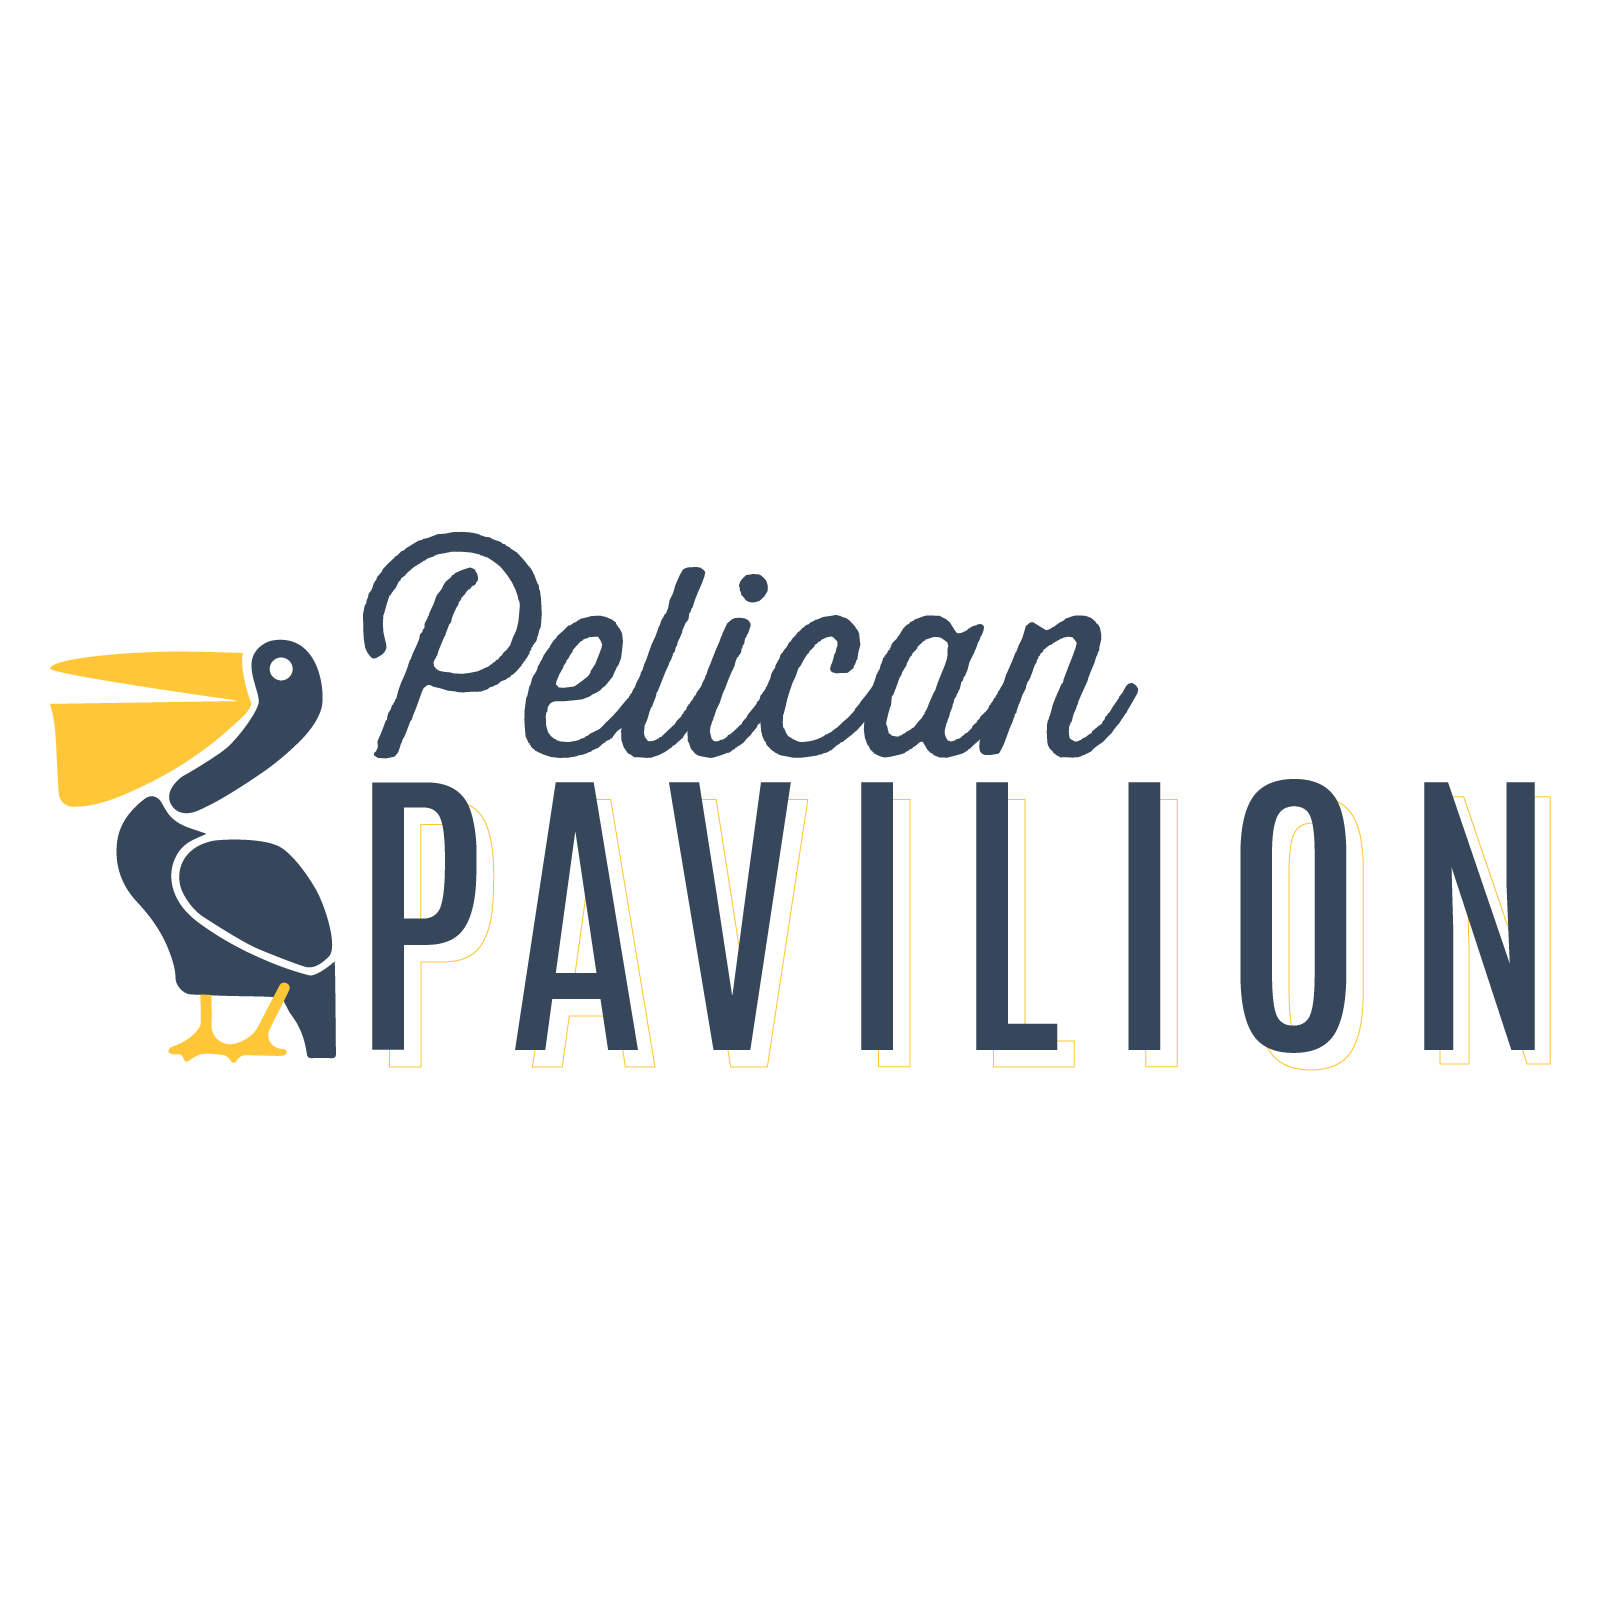 Pelican Pavilion